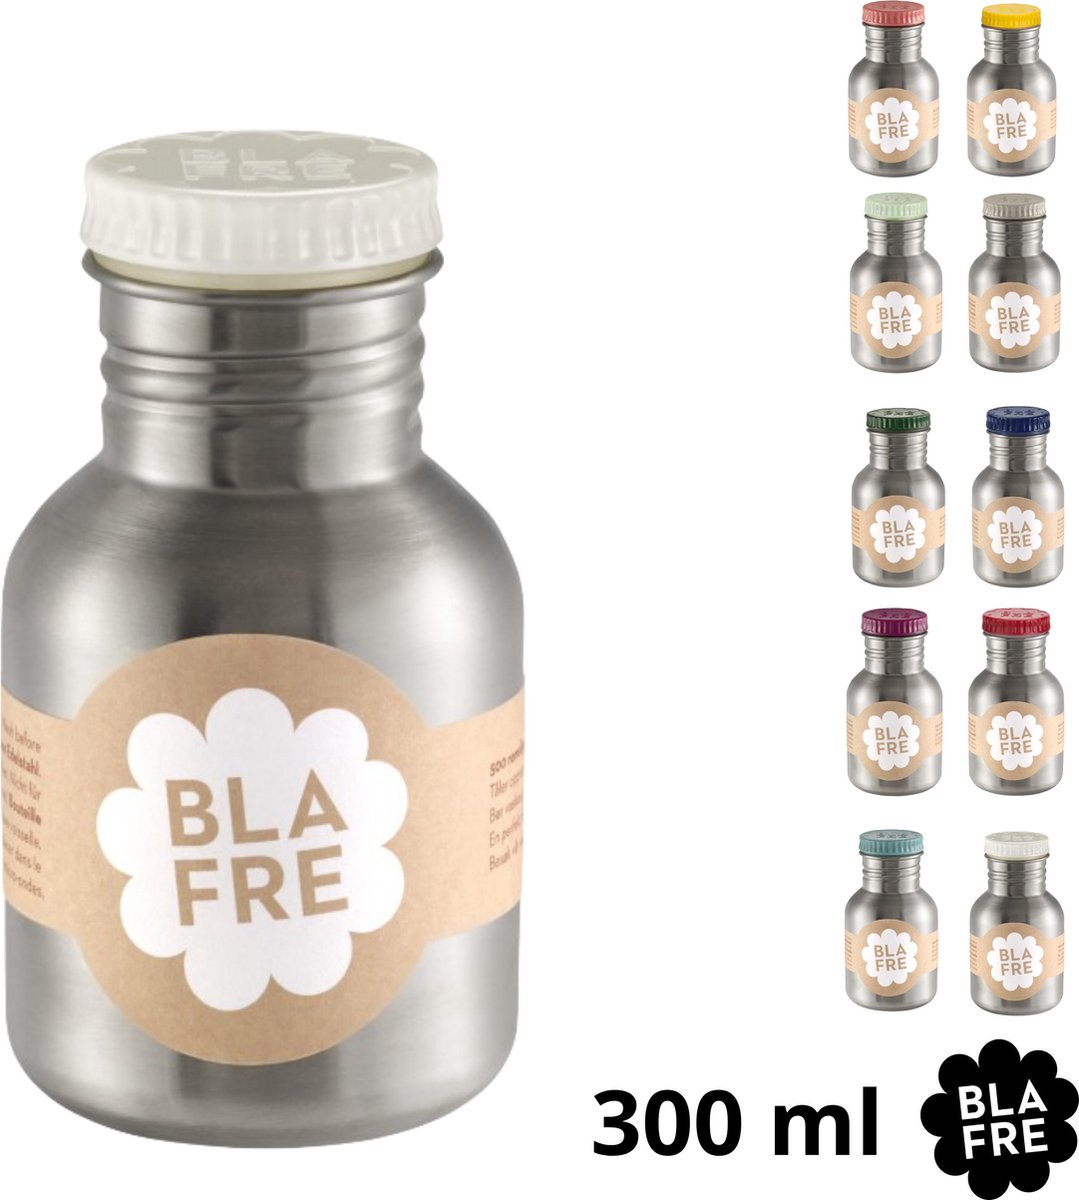 Blafre - RVS drinkfles 300 ml wit